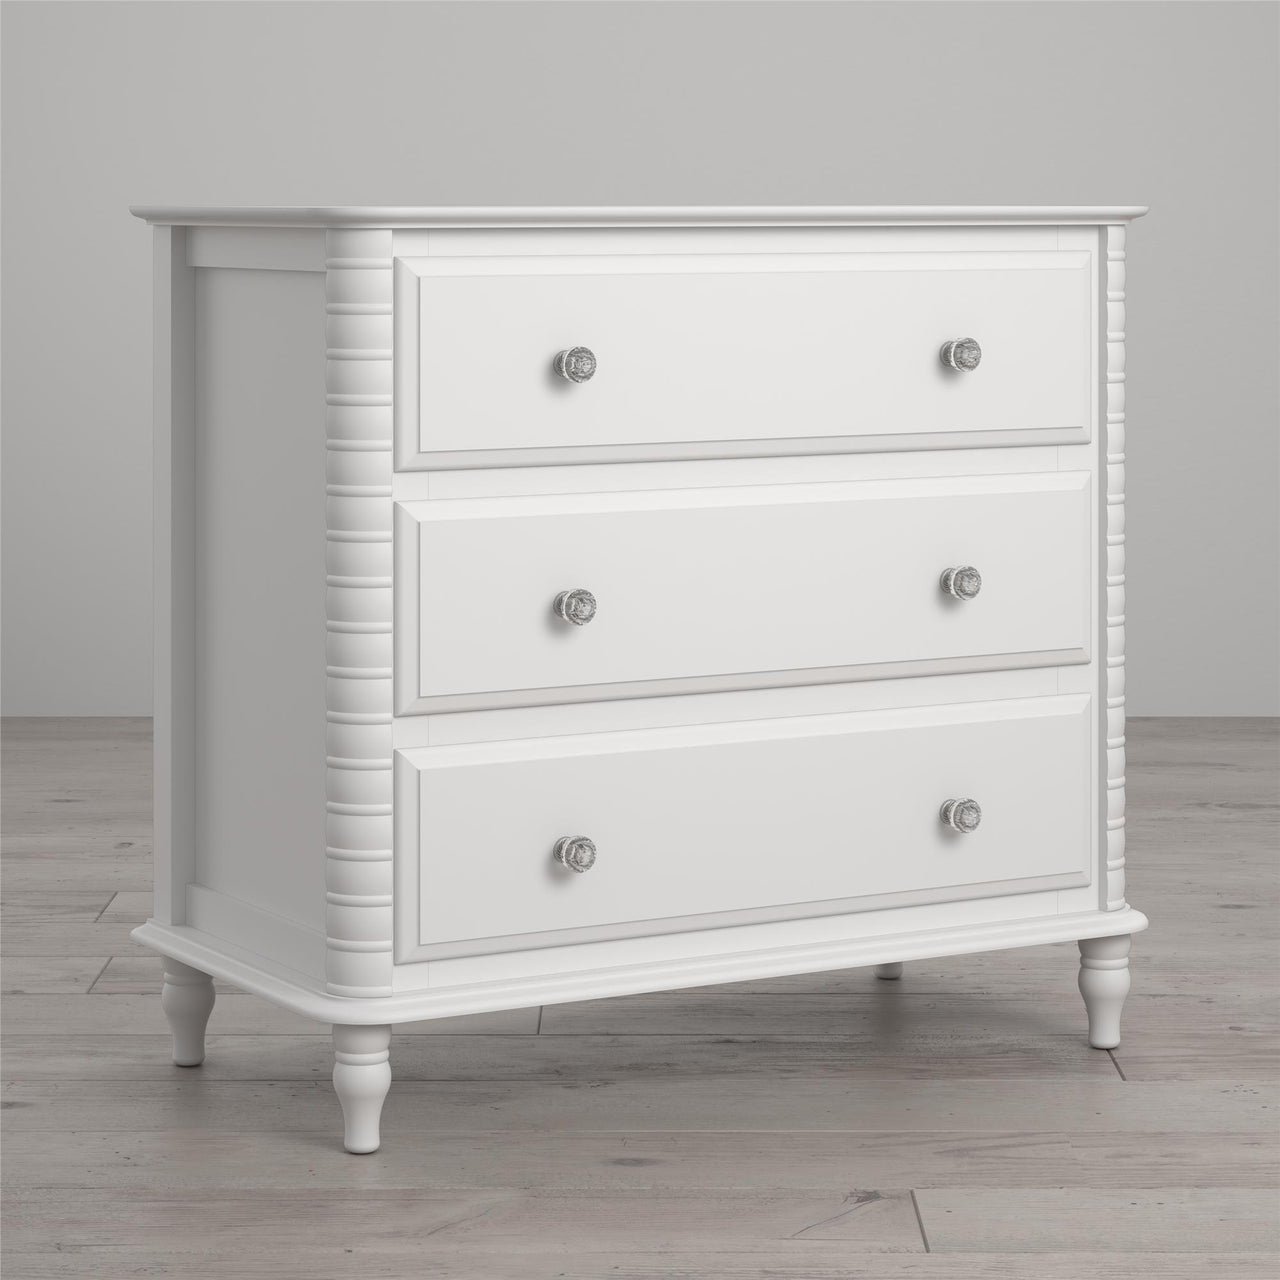 Rowan Valley Linden 3 Drawer Dresser - White